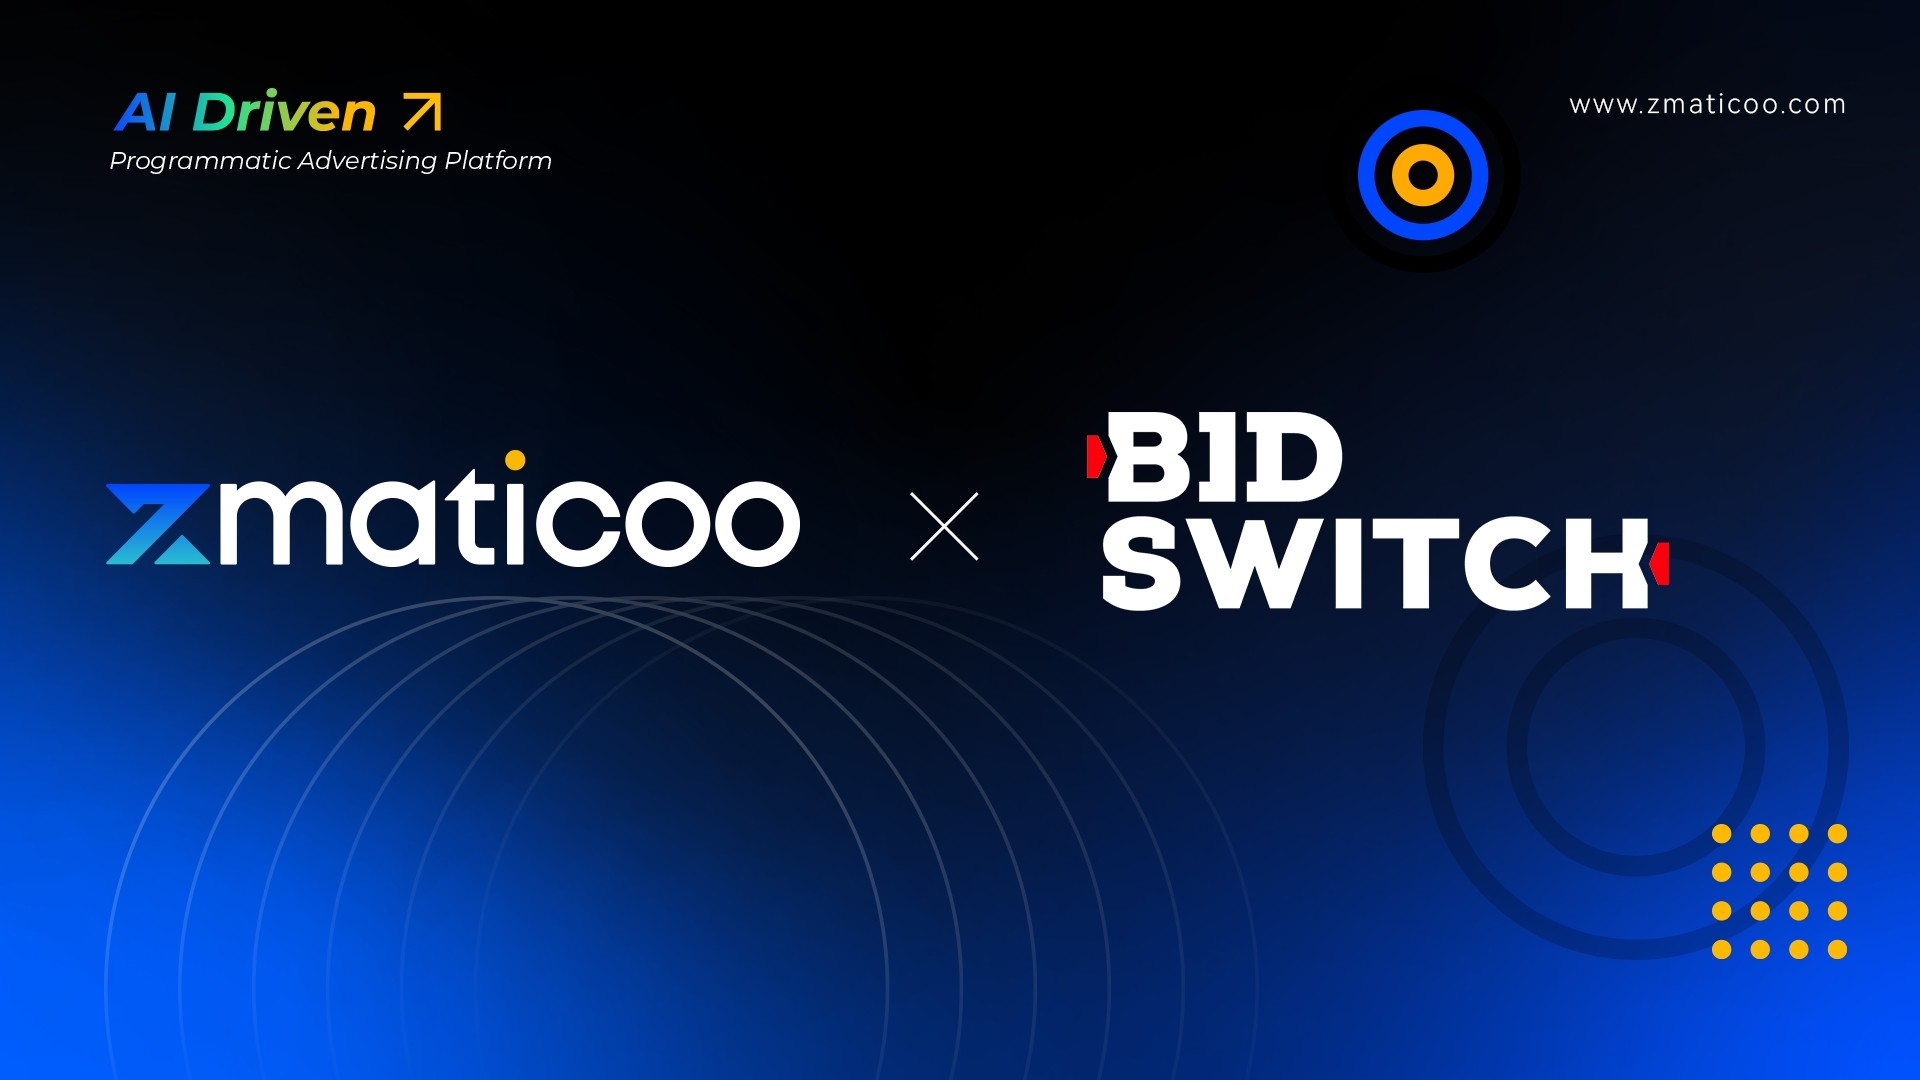 易点天下zMaticoo与BidSwitch生态互联 共建程序化广告增长新链路